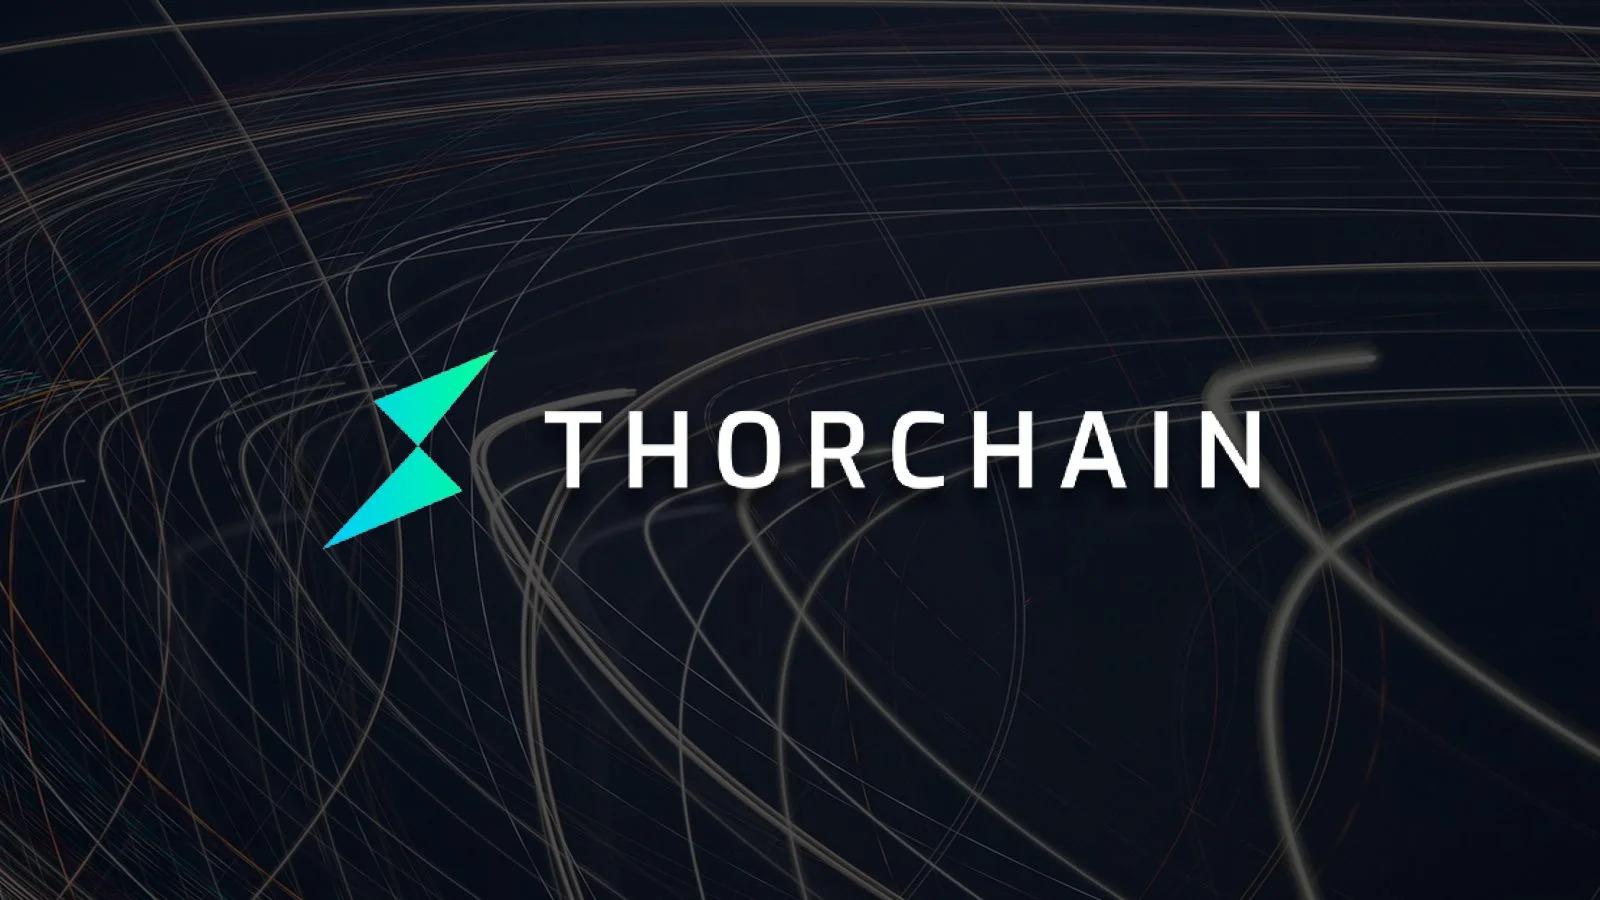 thorchain-rune-ra-mat-mainnet-ho-tro-7-blockchain-khac-nhau-sau-bon-nam-phat-trien